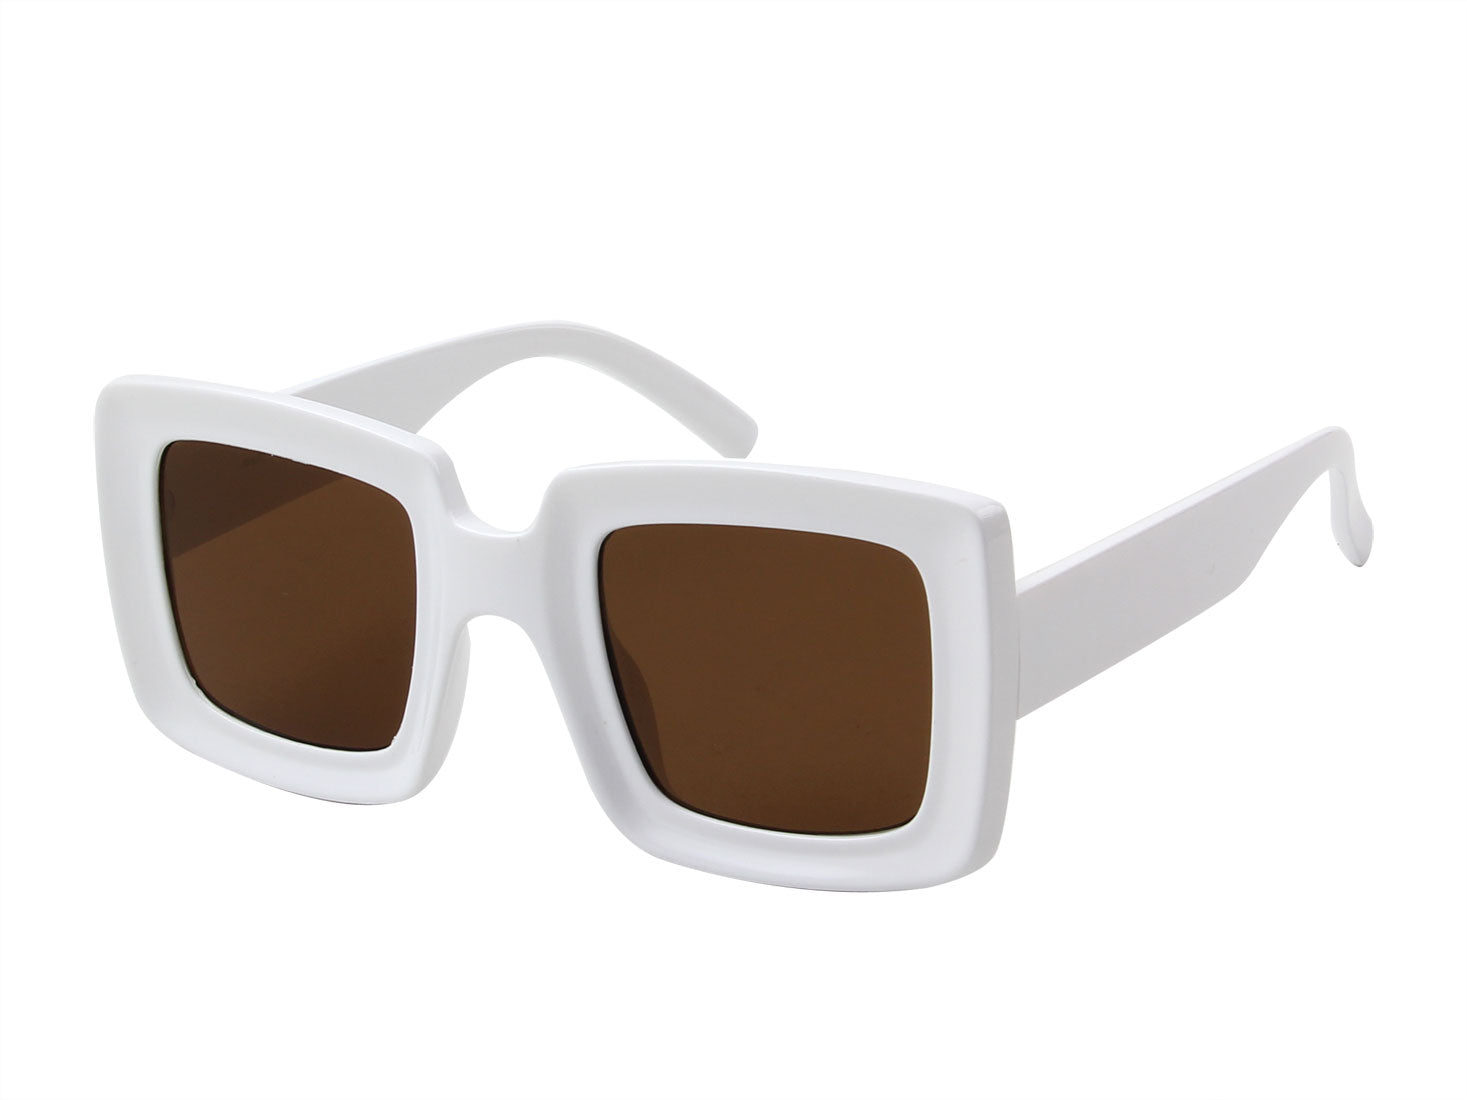 S1141 - Women Retro Bold Square Fashion Sunglasses - Iris Fashion Inc. | Wholesale Sunglasses and Glasses